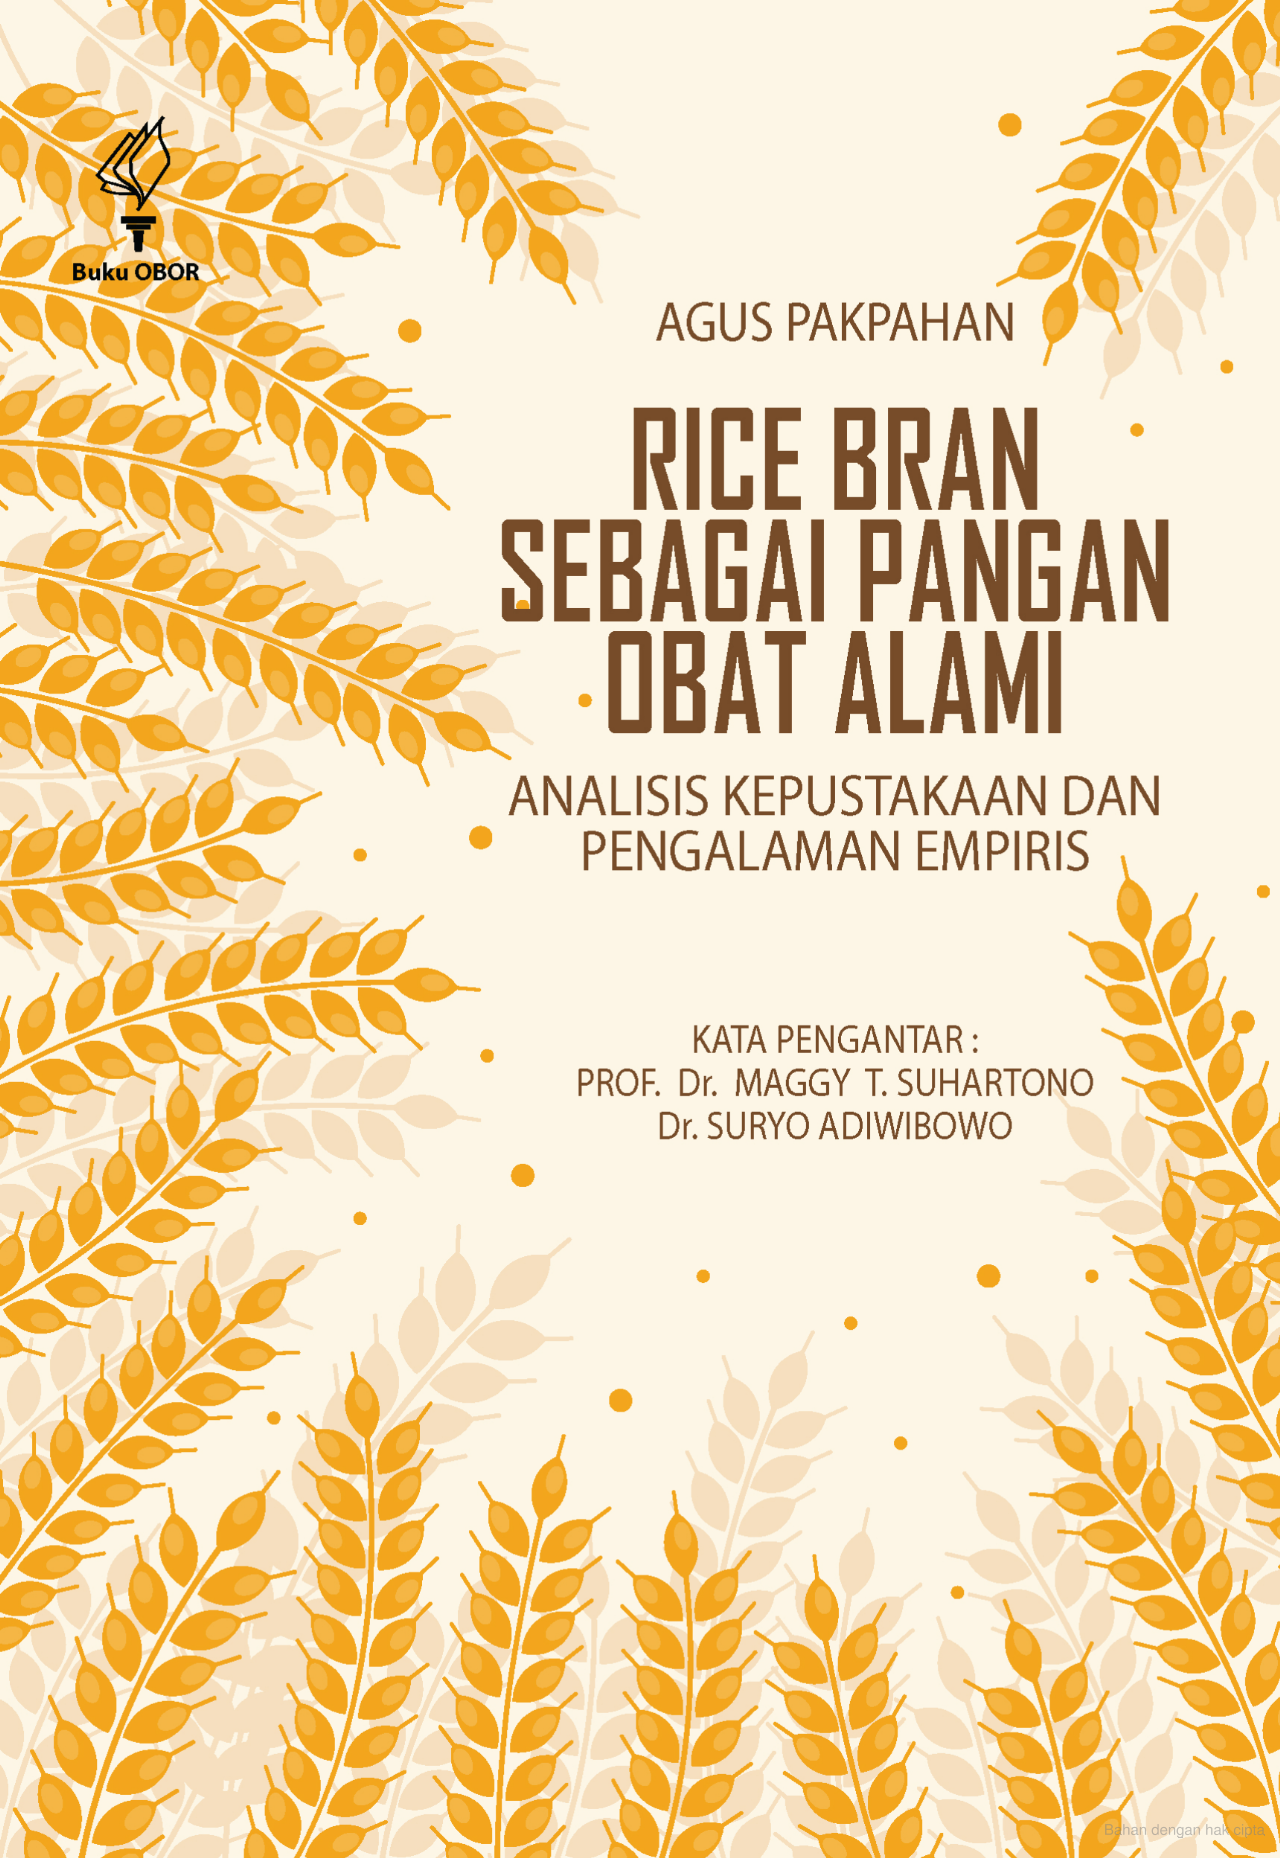 Rice bran sebagai obat alami :  analisis kepustakaan dan pengalaman empiris